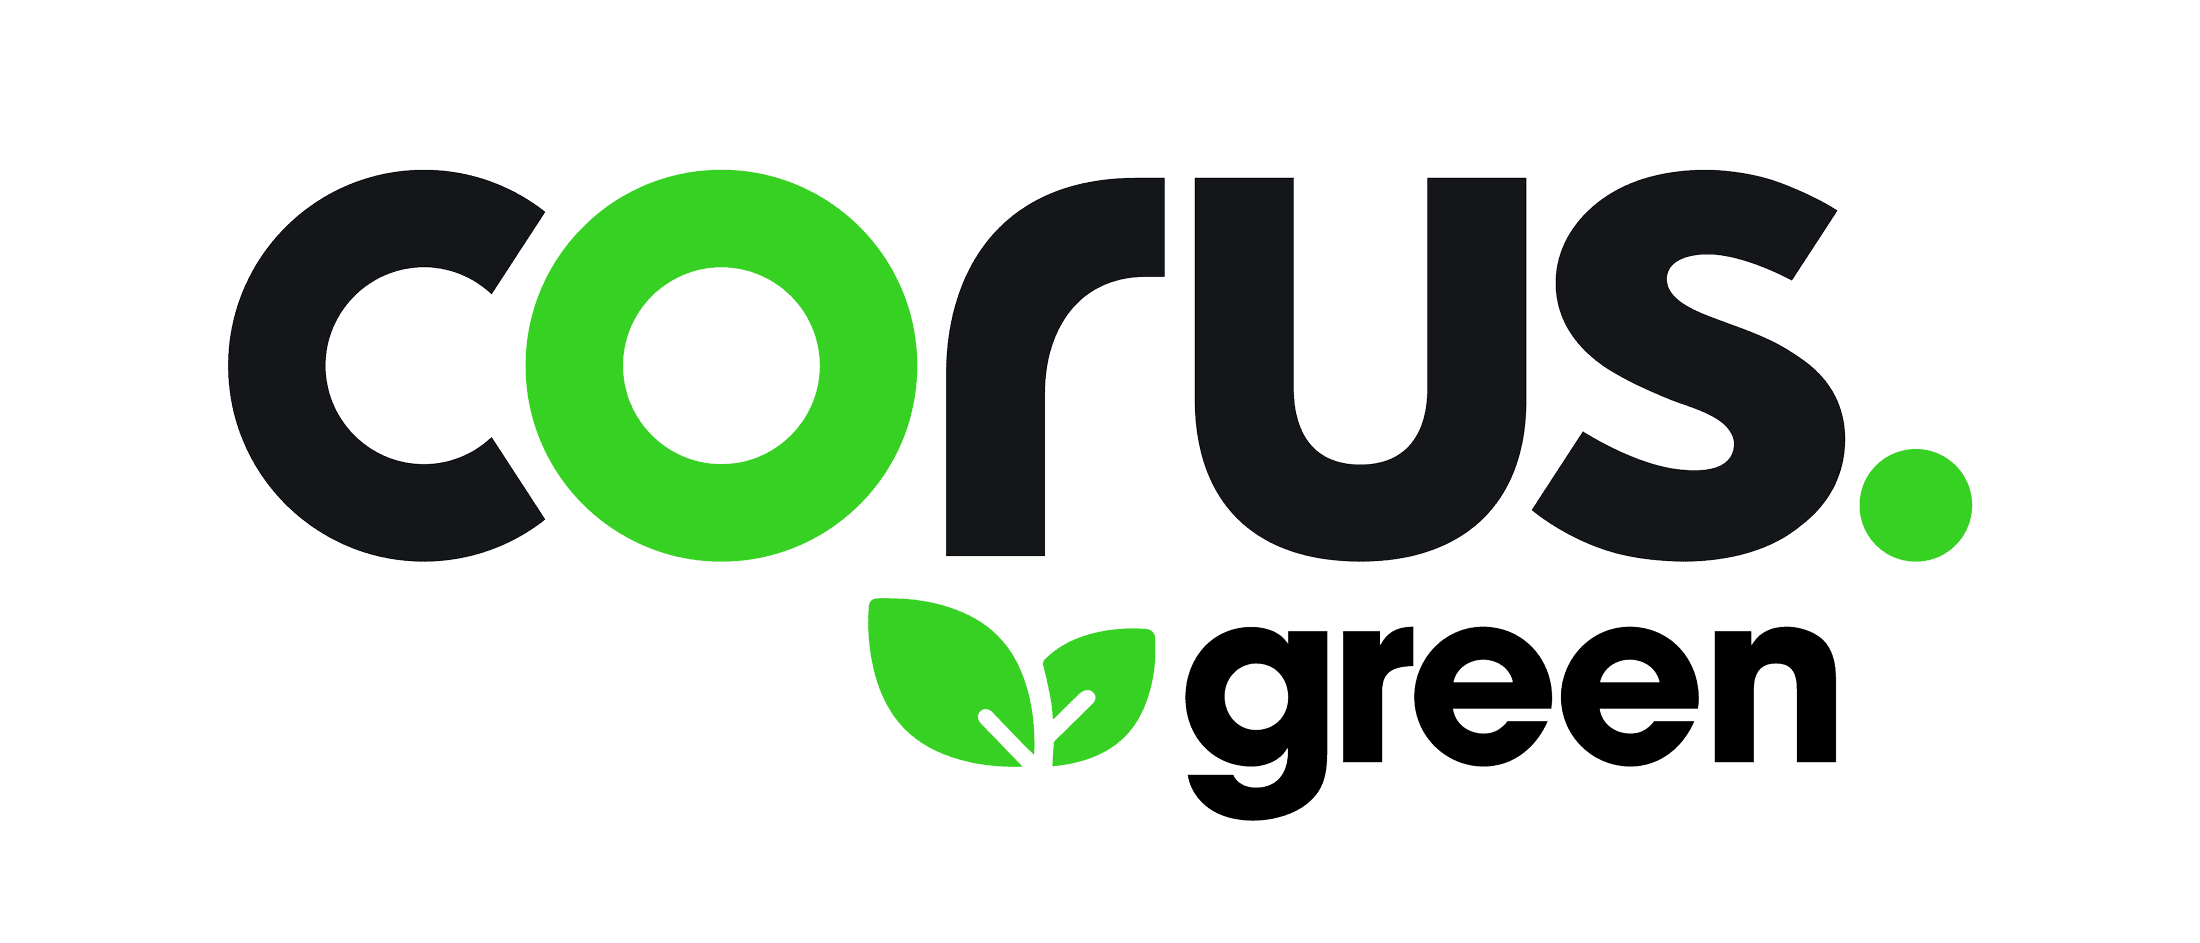 Corus Green logo